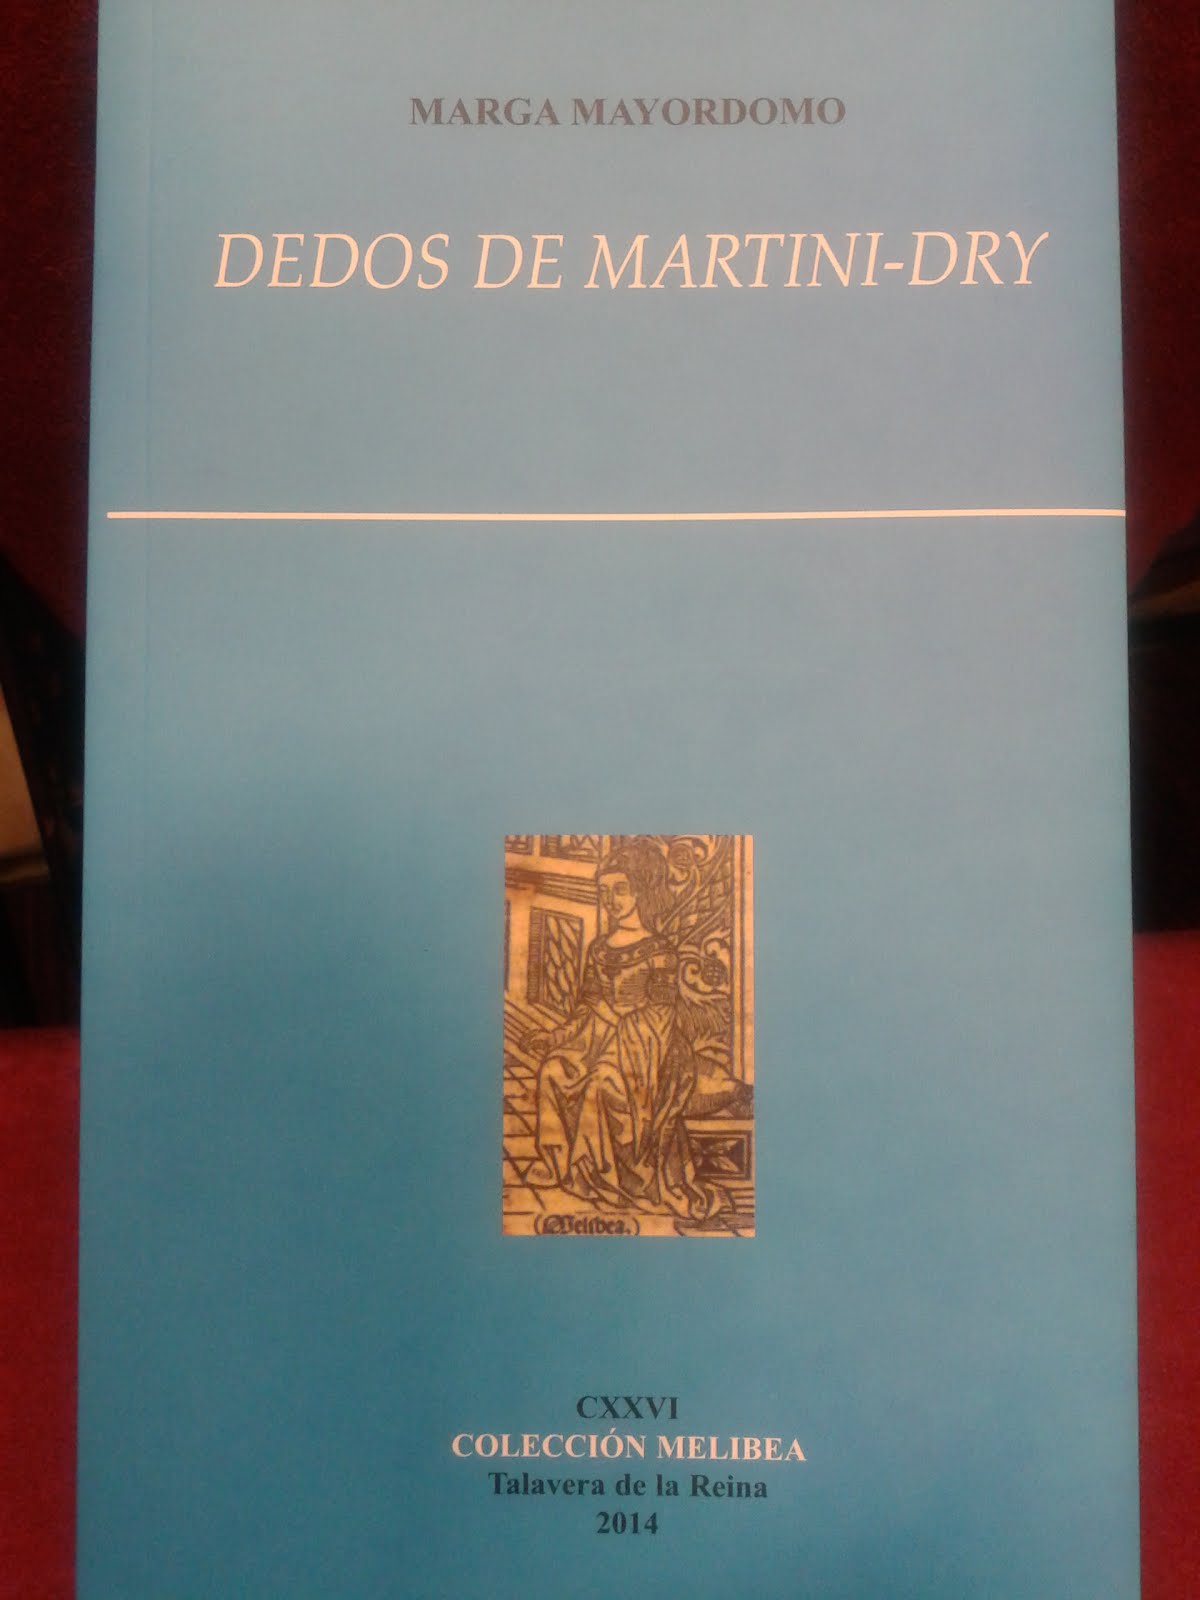 Dedos de Martiny-Dry (Premio Joaquín Benito de Lucas 2013, Colección Melibea)